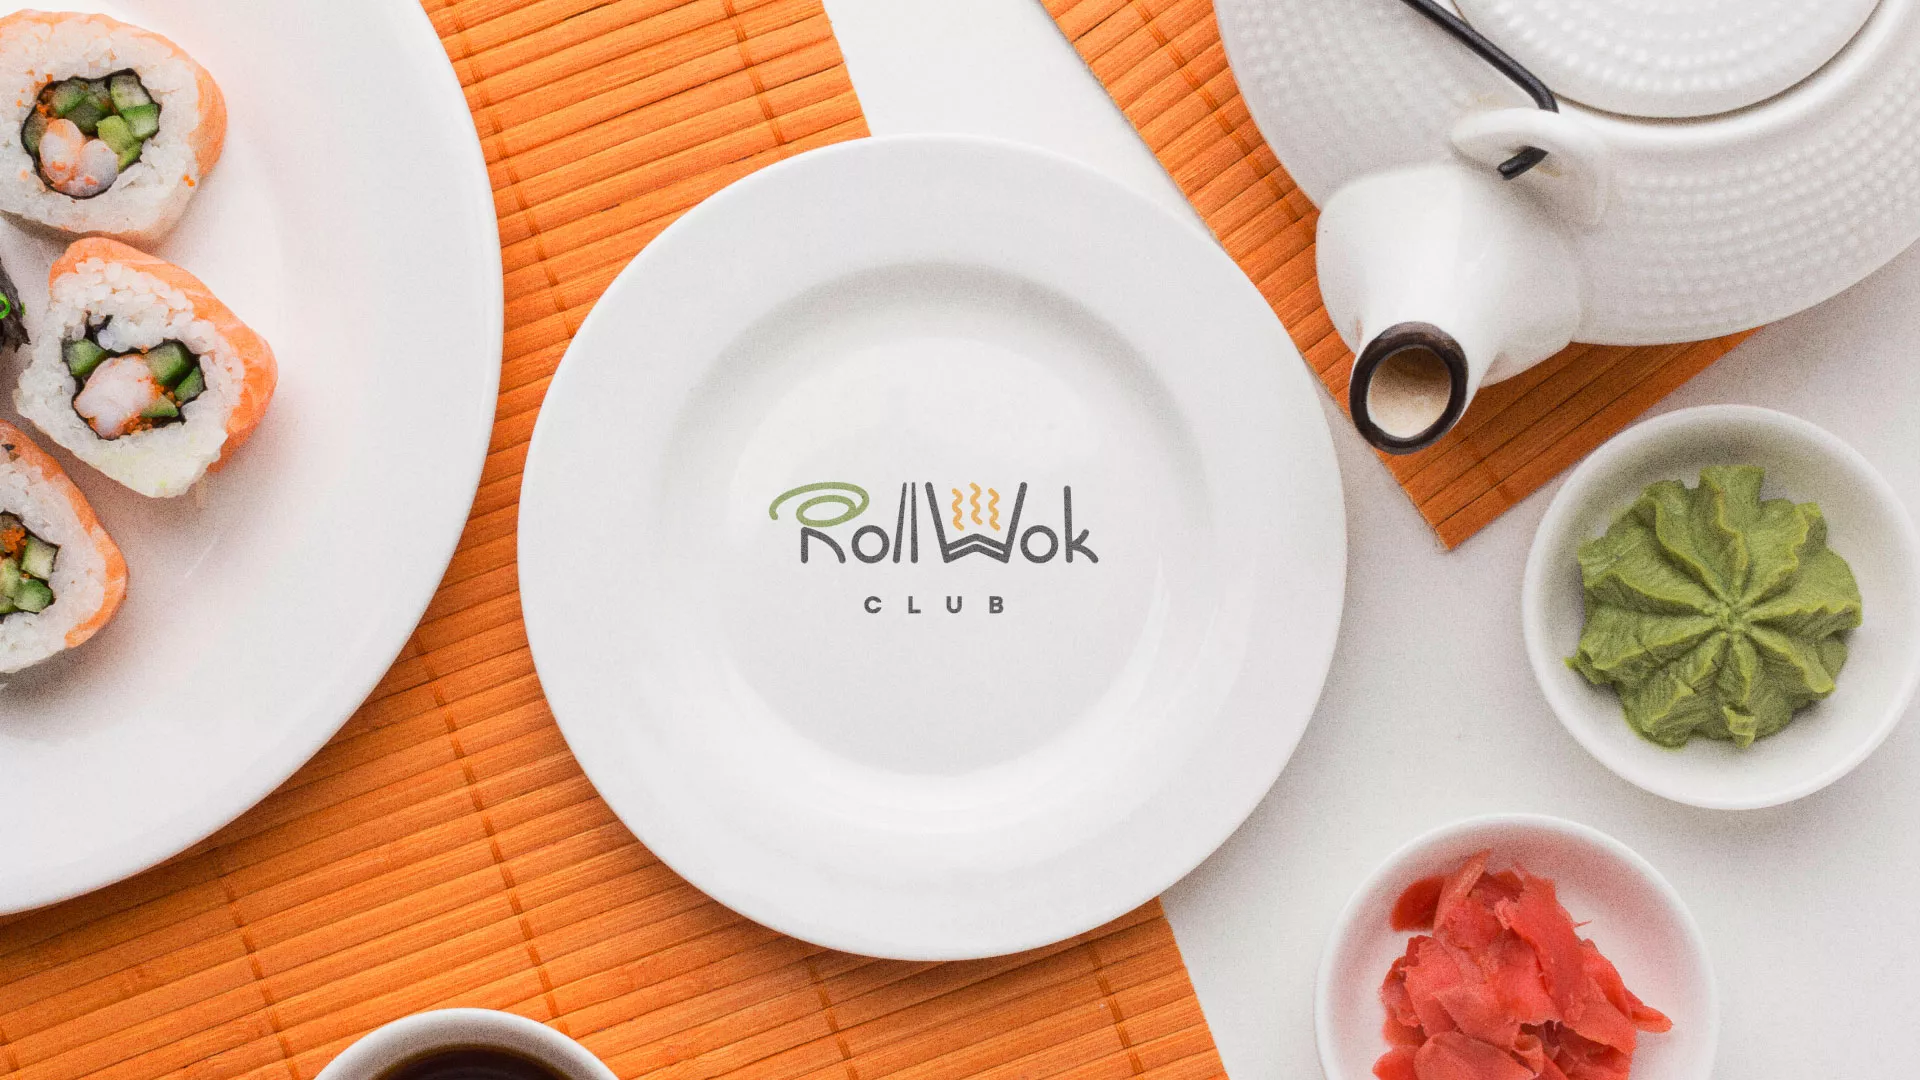 Разработка логотипа и фирменного стиля суши-бара «Roll Wok Club» в Санкт-Петербурге